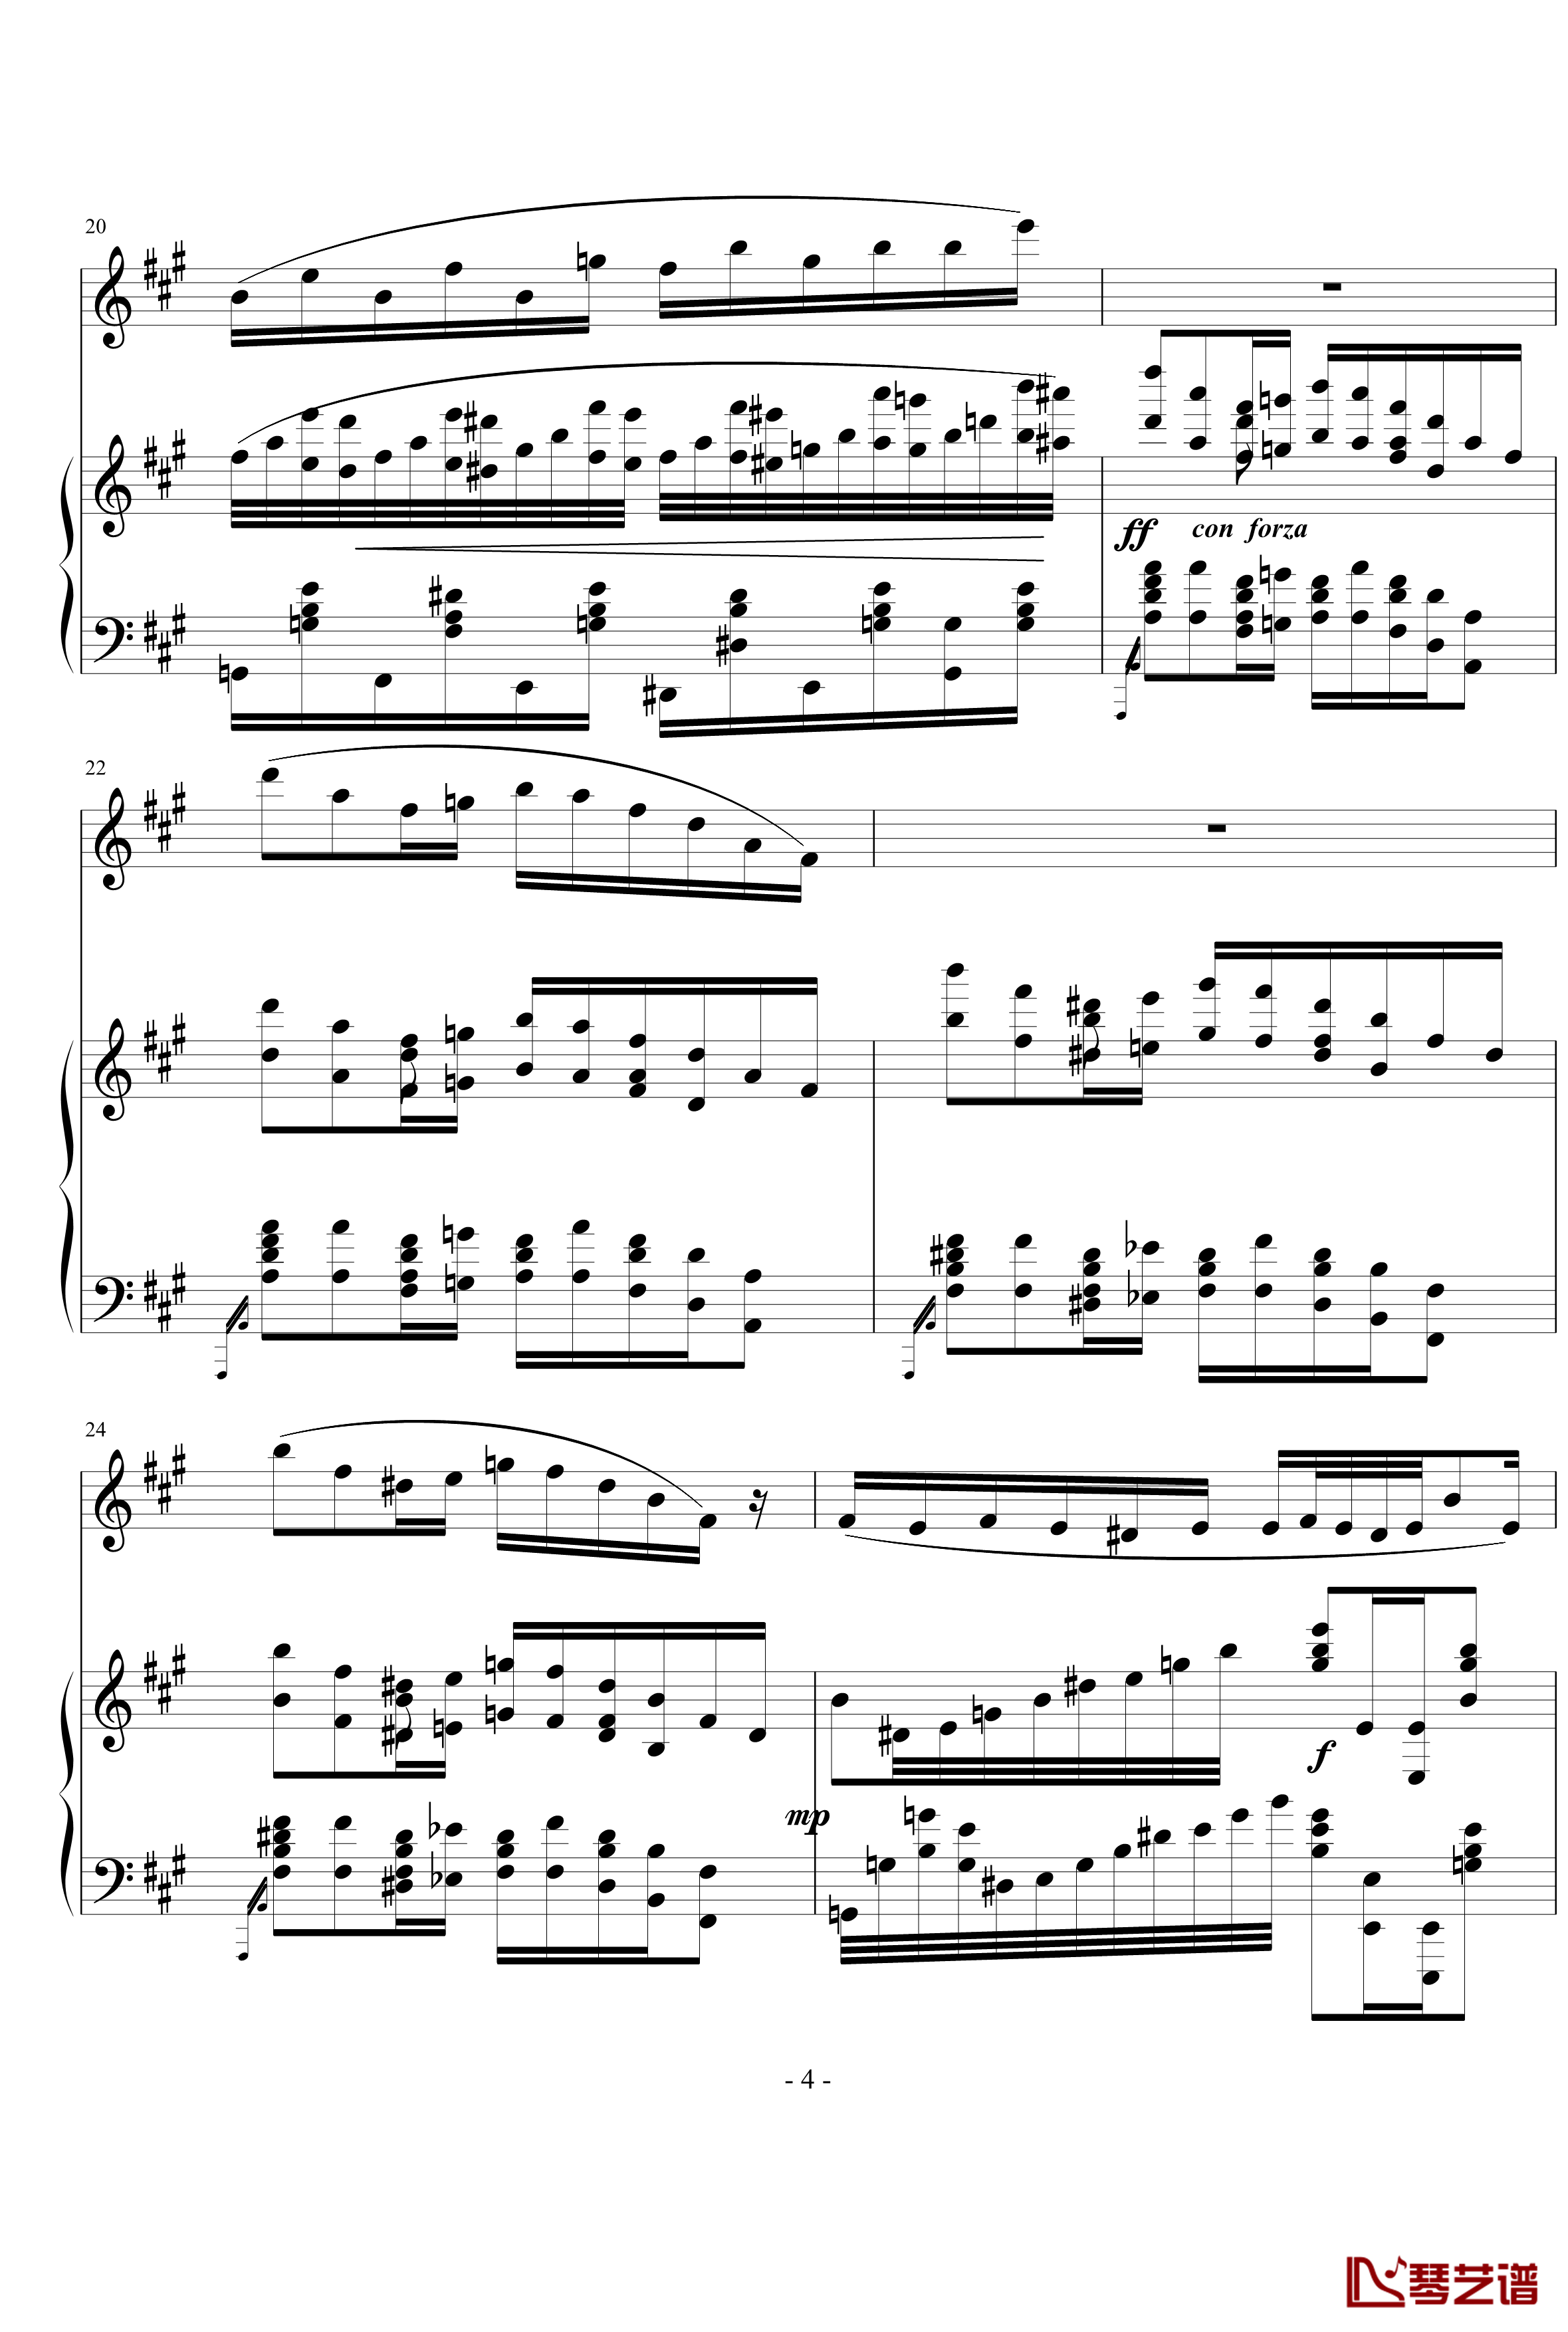 钢琴单簧管小奏鸣曲钢琴谱-nyride4